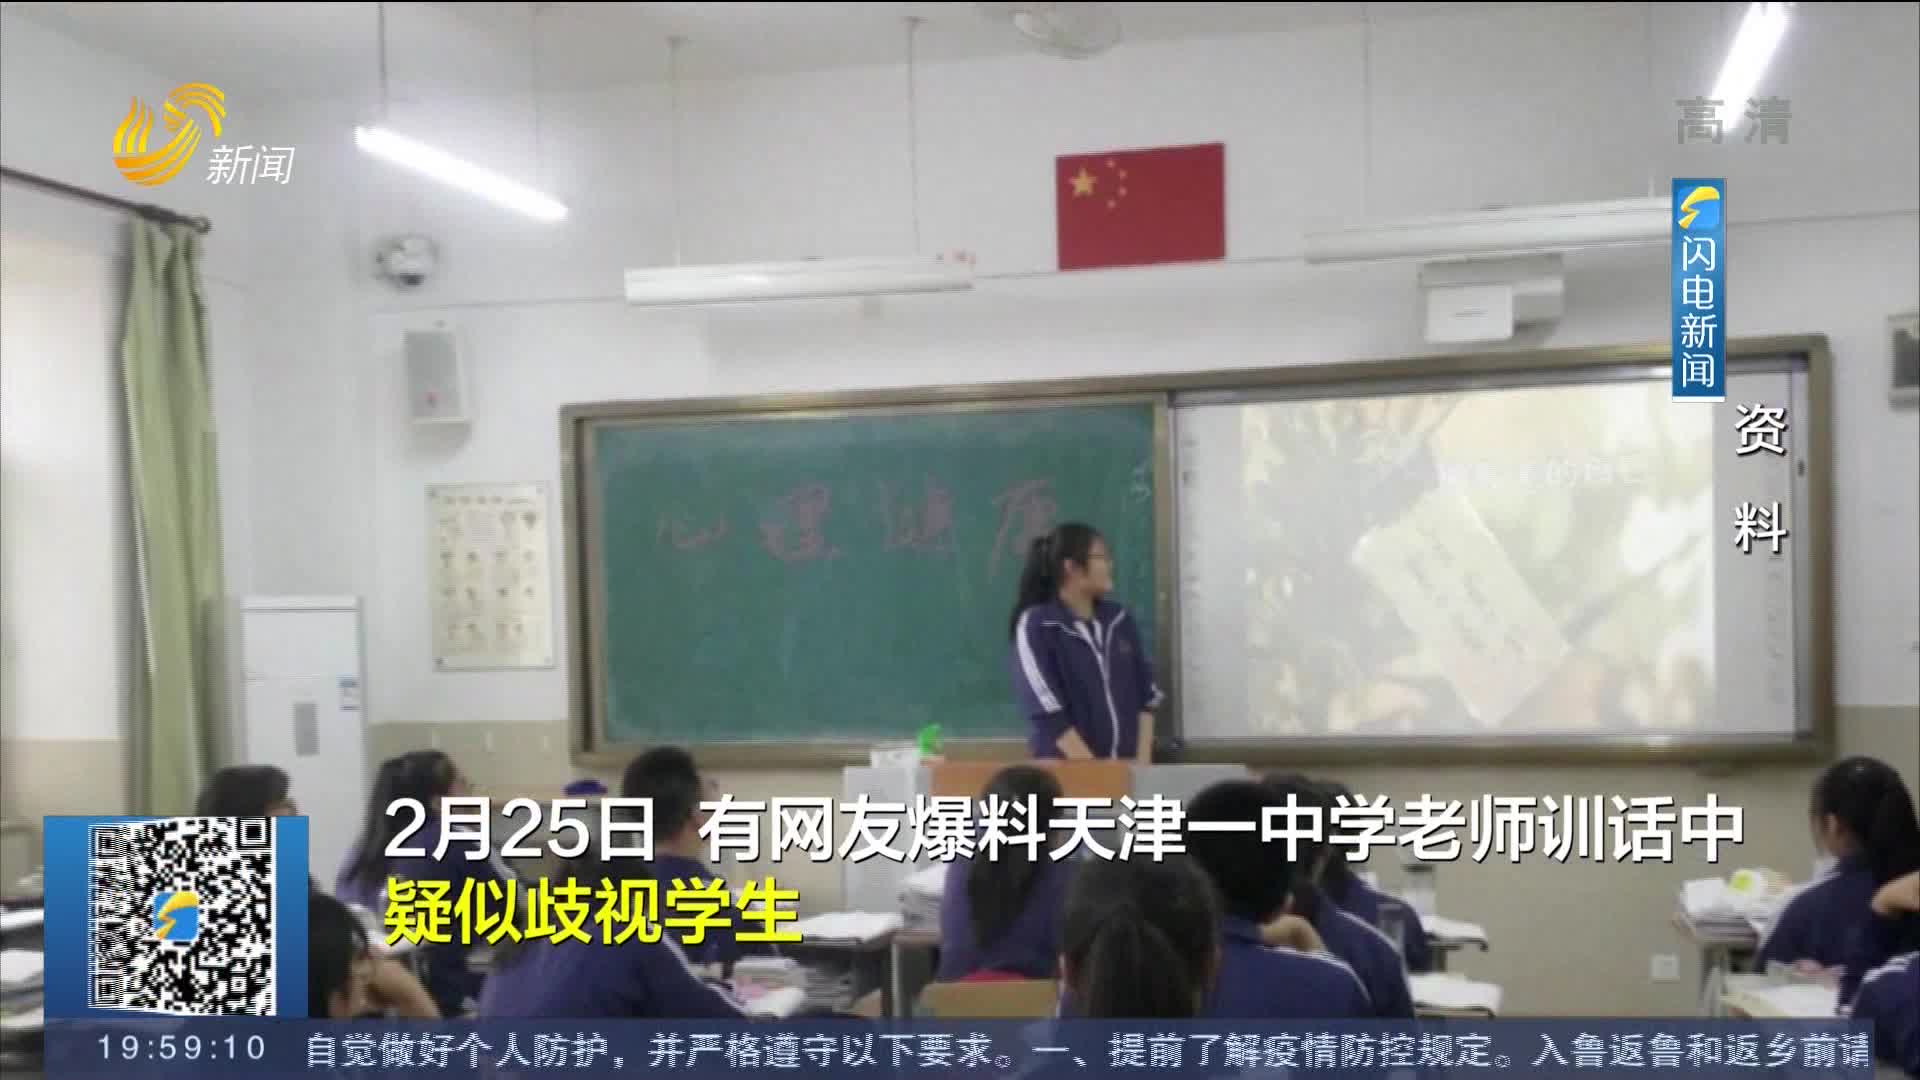 对比学生家长收入 天津一中学老师被撤销资格